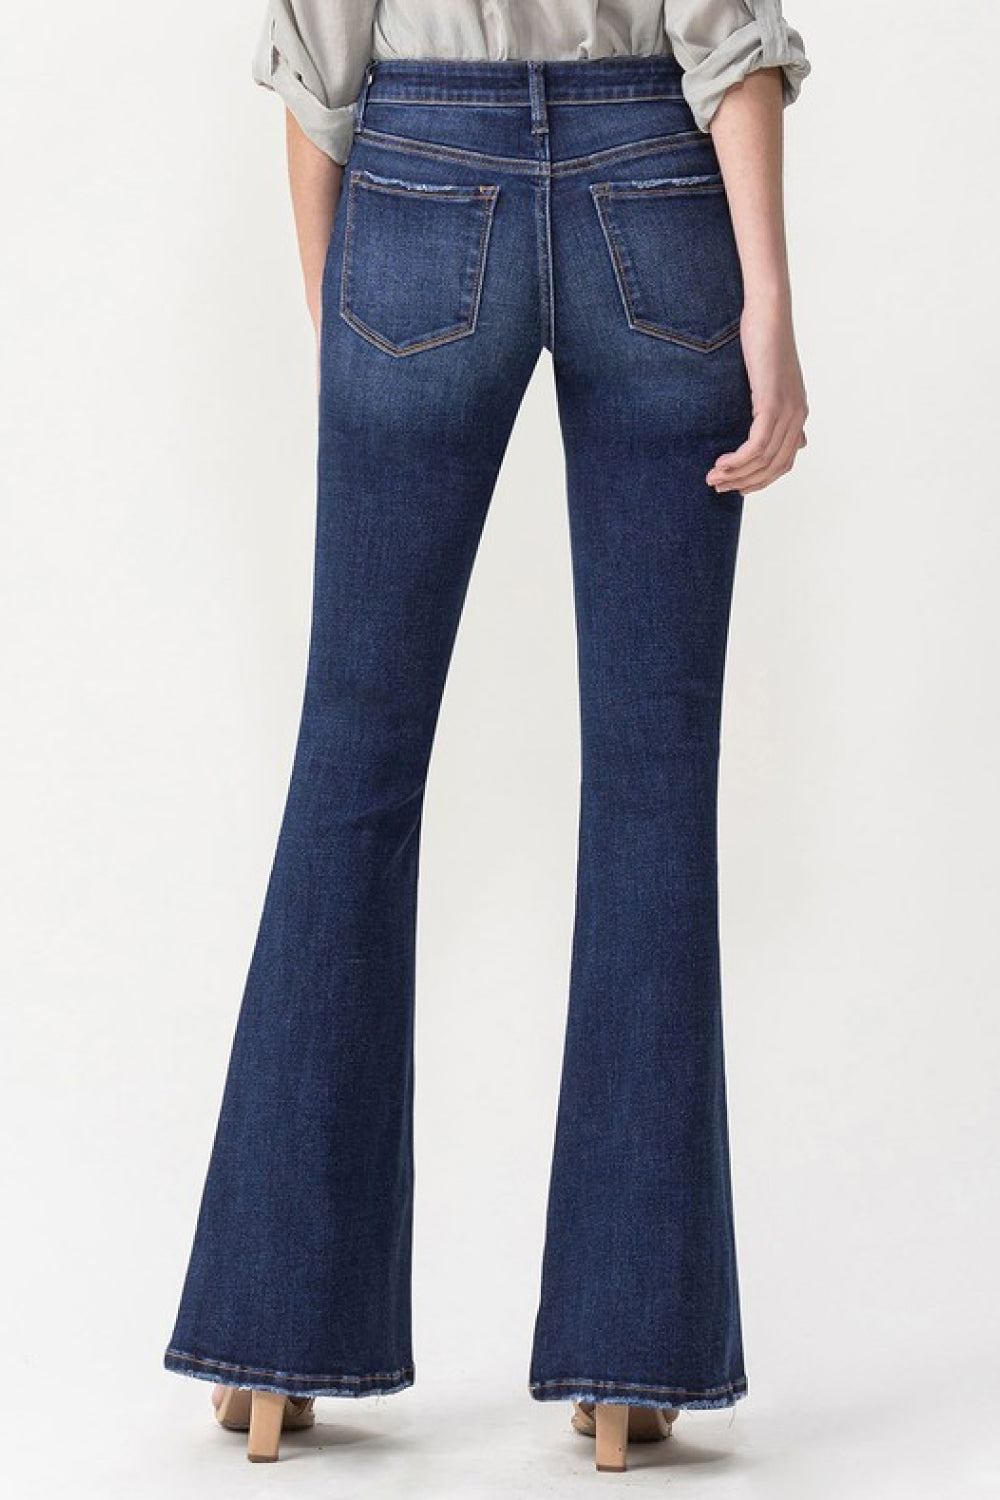 Lovervet Joanna Midrise Flare Jeans-Trendsi-[option4]-[option5]-[option6]-[option7]-[option8]-Shop-Boutique-Clothing-for-Women-Online